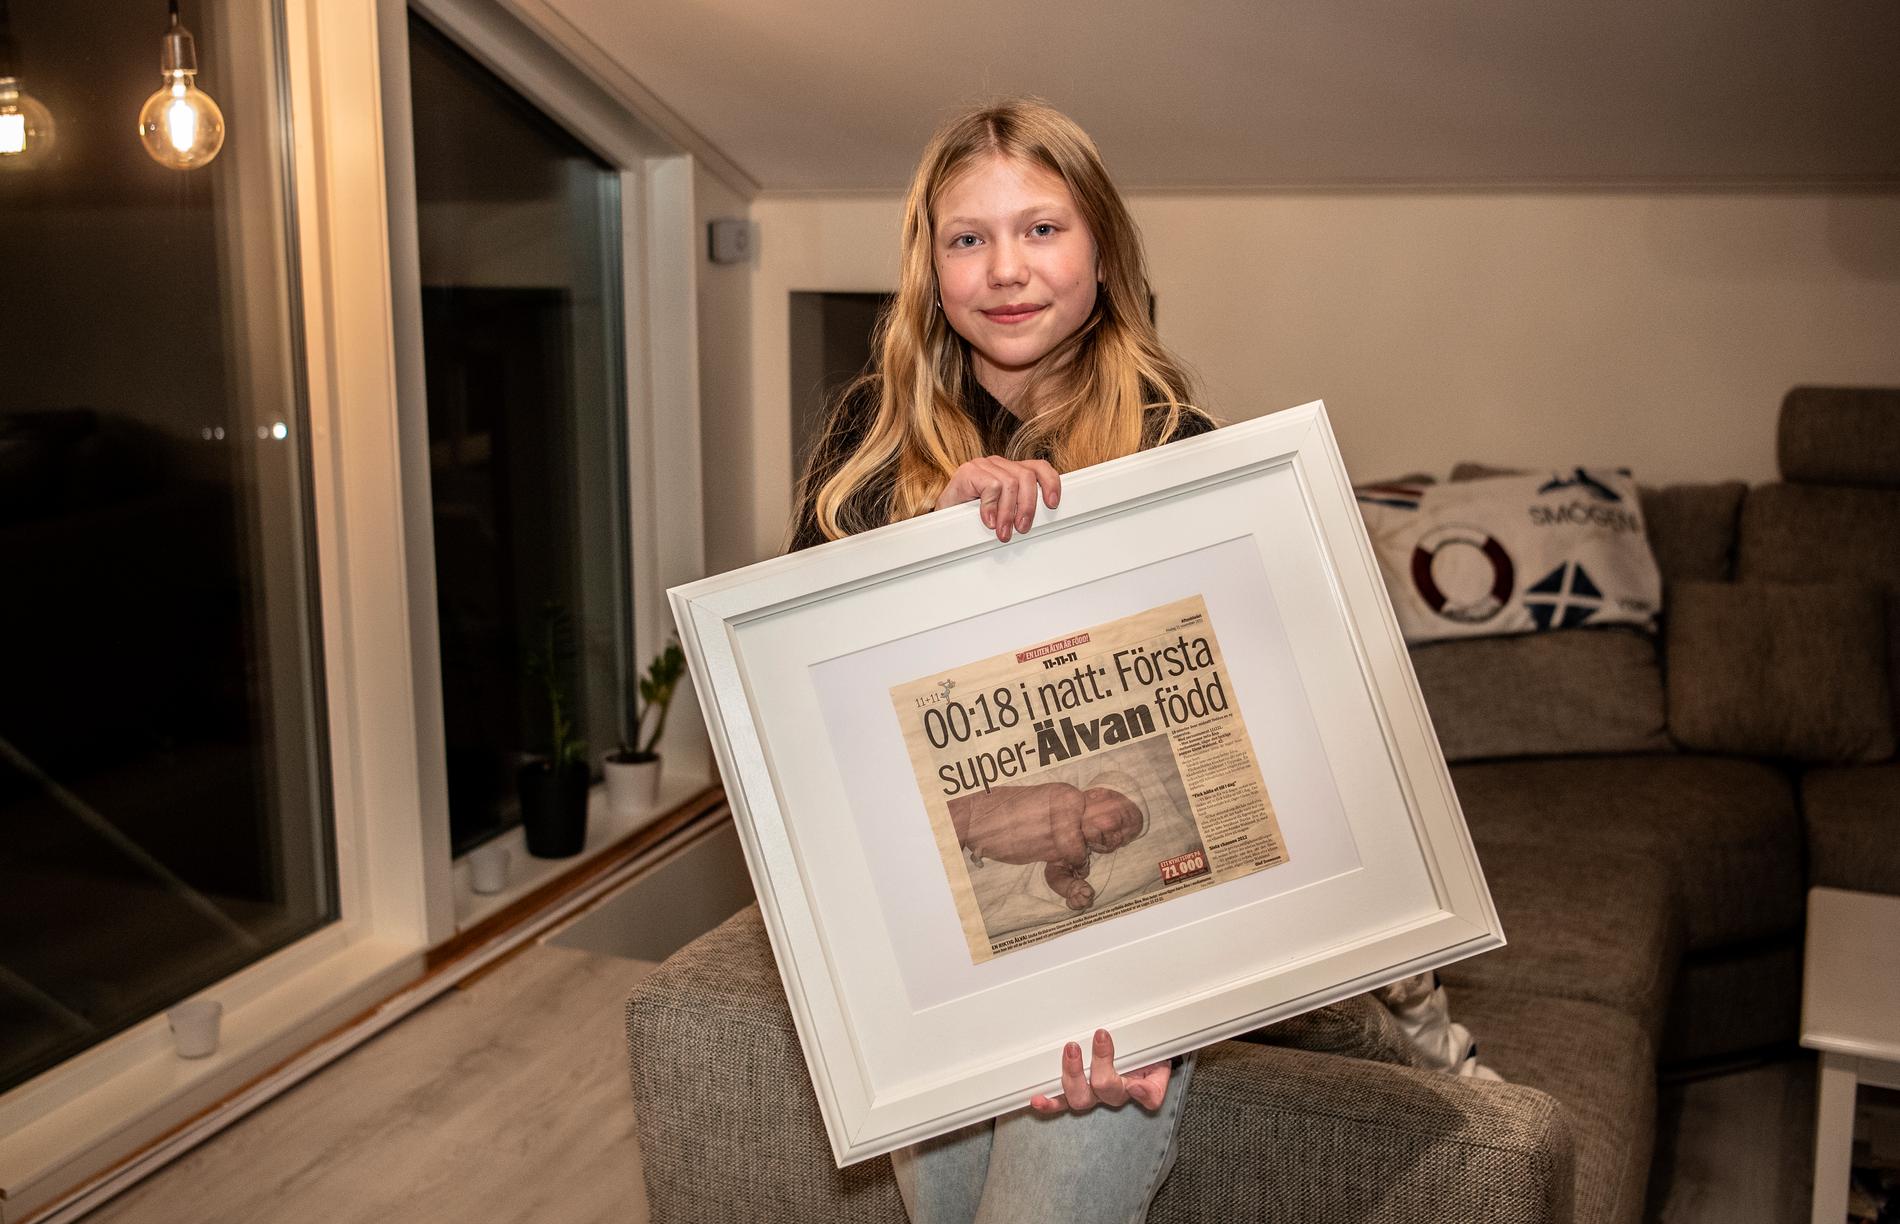 Artikeln i Aftonbladet för elva år sedan blev en tavla hemma hos familjen.